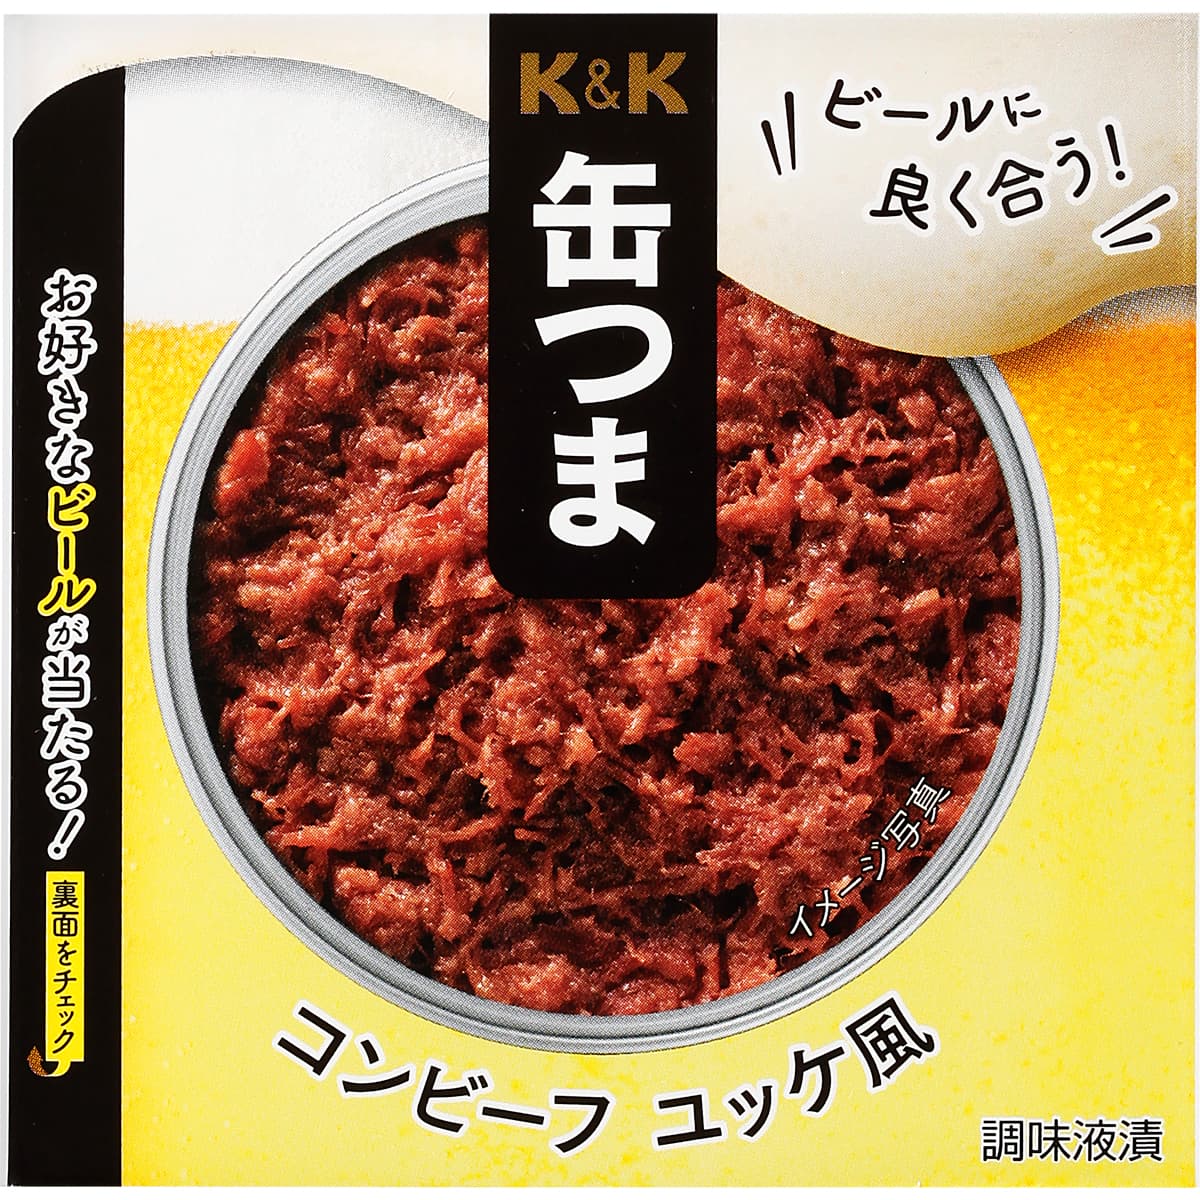 【在庫のこりわずか】K&K 缶つま コンビーフ ユッケ風（期間限定ビールパッケージ）